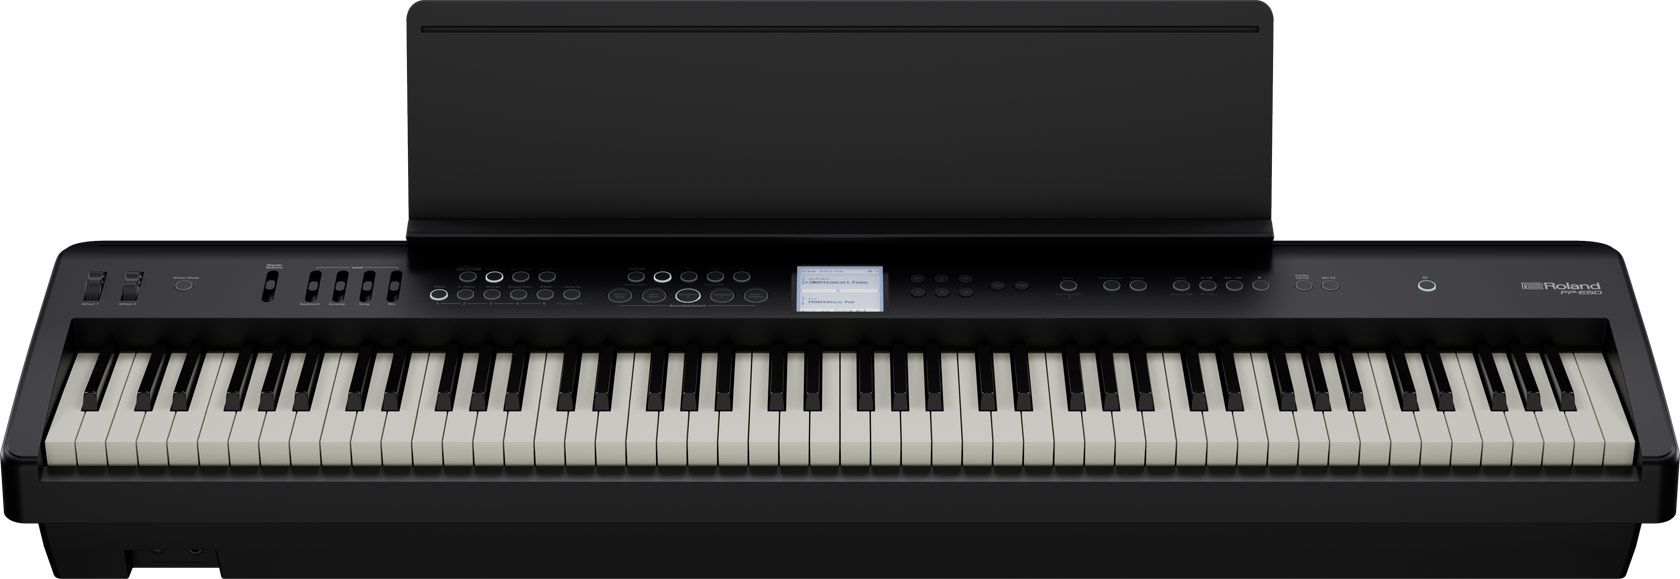 Цифровые пианино Roland FP-E50-BK творческий ежедневник а5 120 л 365